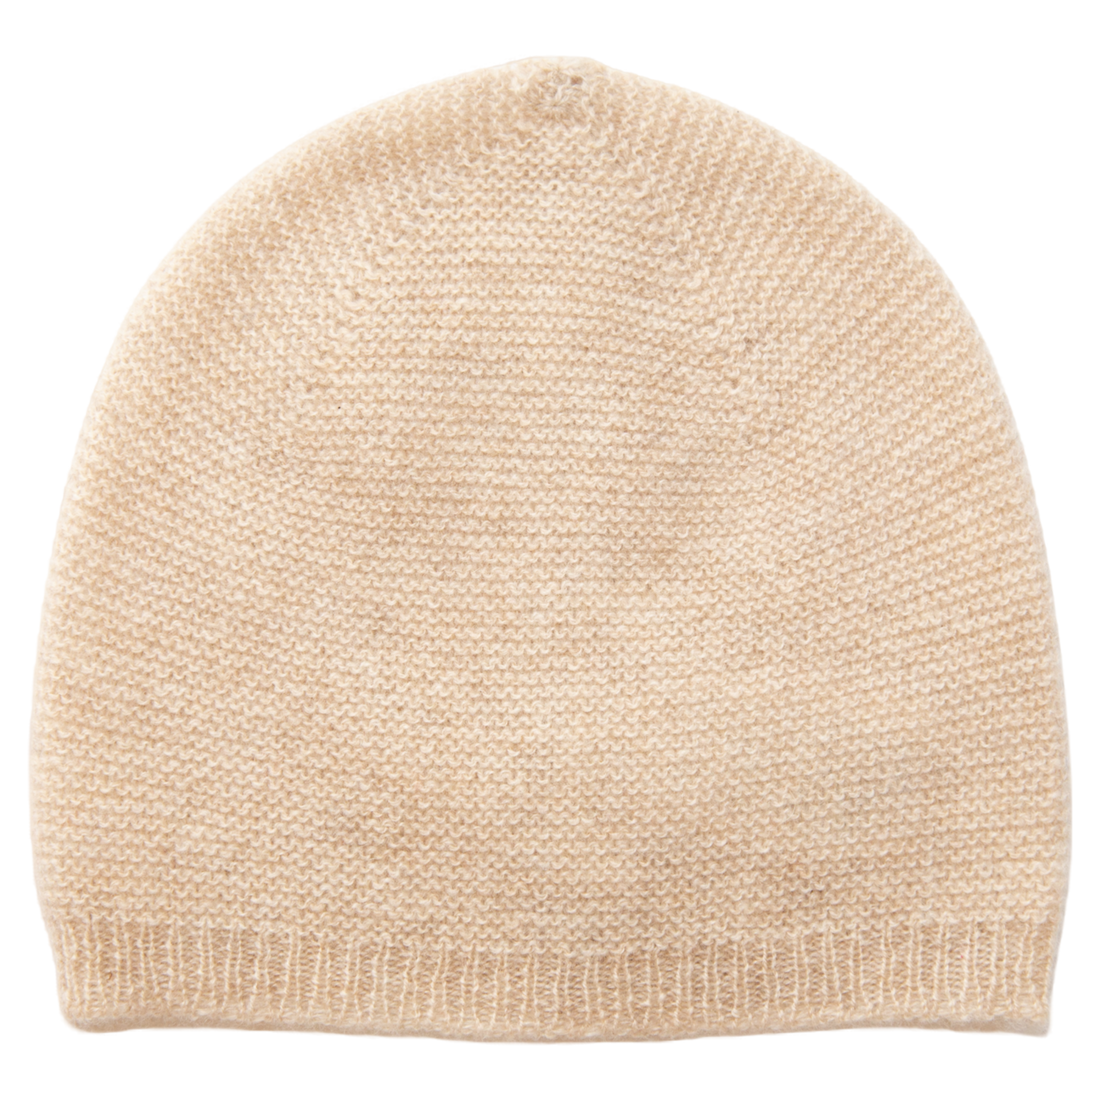 Die Baby-Mütze ANOUK aus 100% Kaschmir im flauschigem Perlmuster ist Teil unserer neuen Natural Edition, in der wir ausschließlich naturbelassene Kaschmirgarne verwenden, welche unbehandelt und komplett frei von Farbstoffen sind.